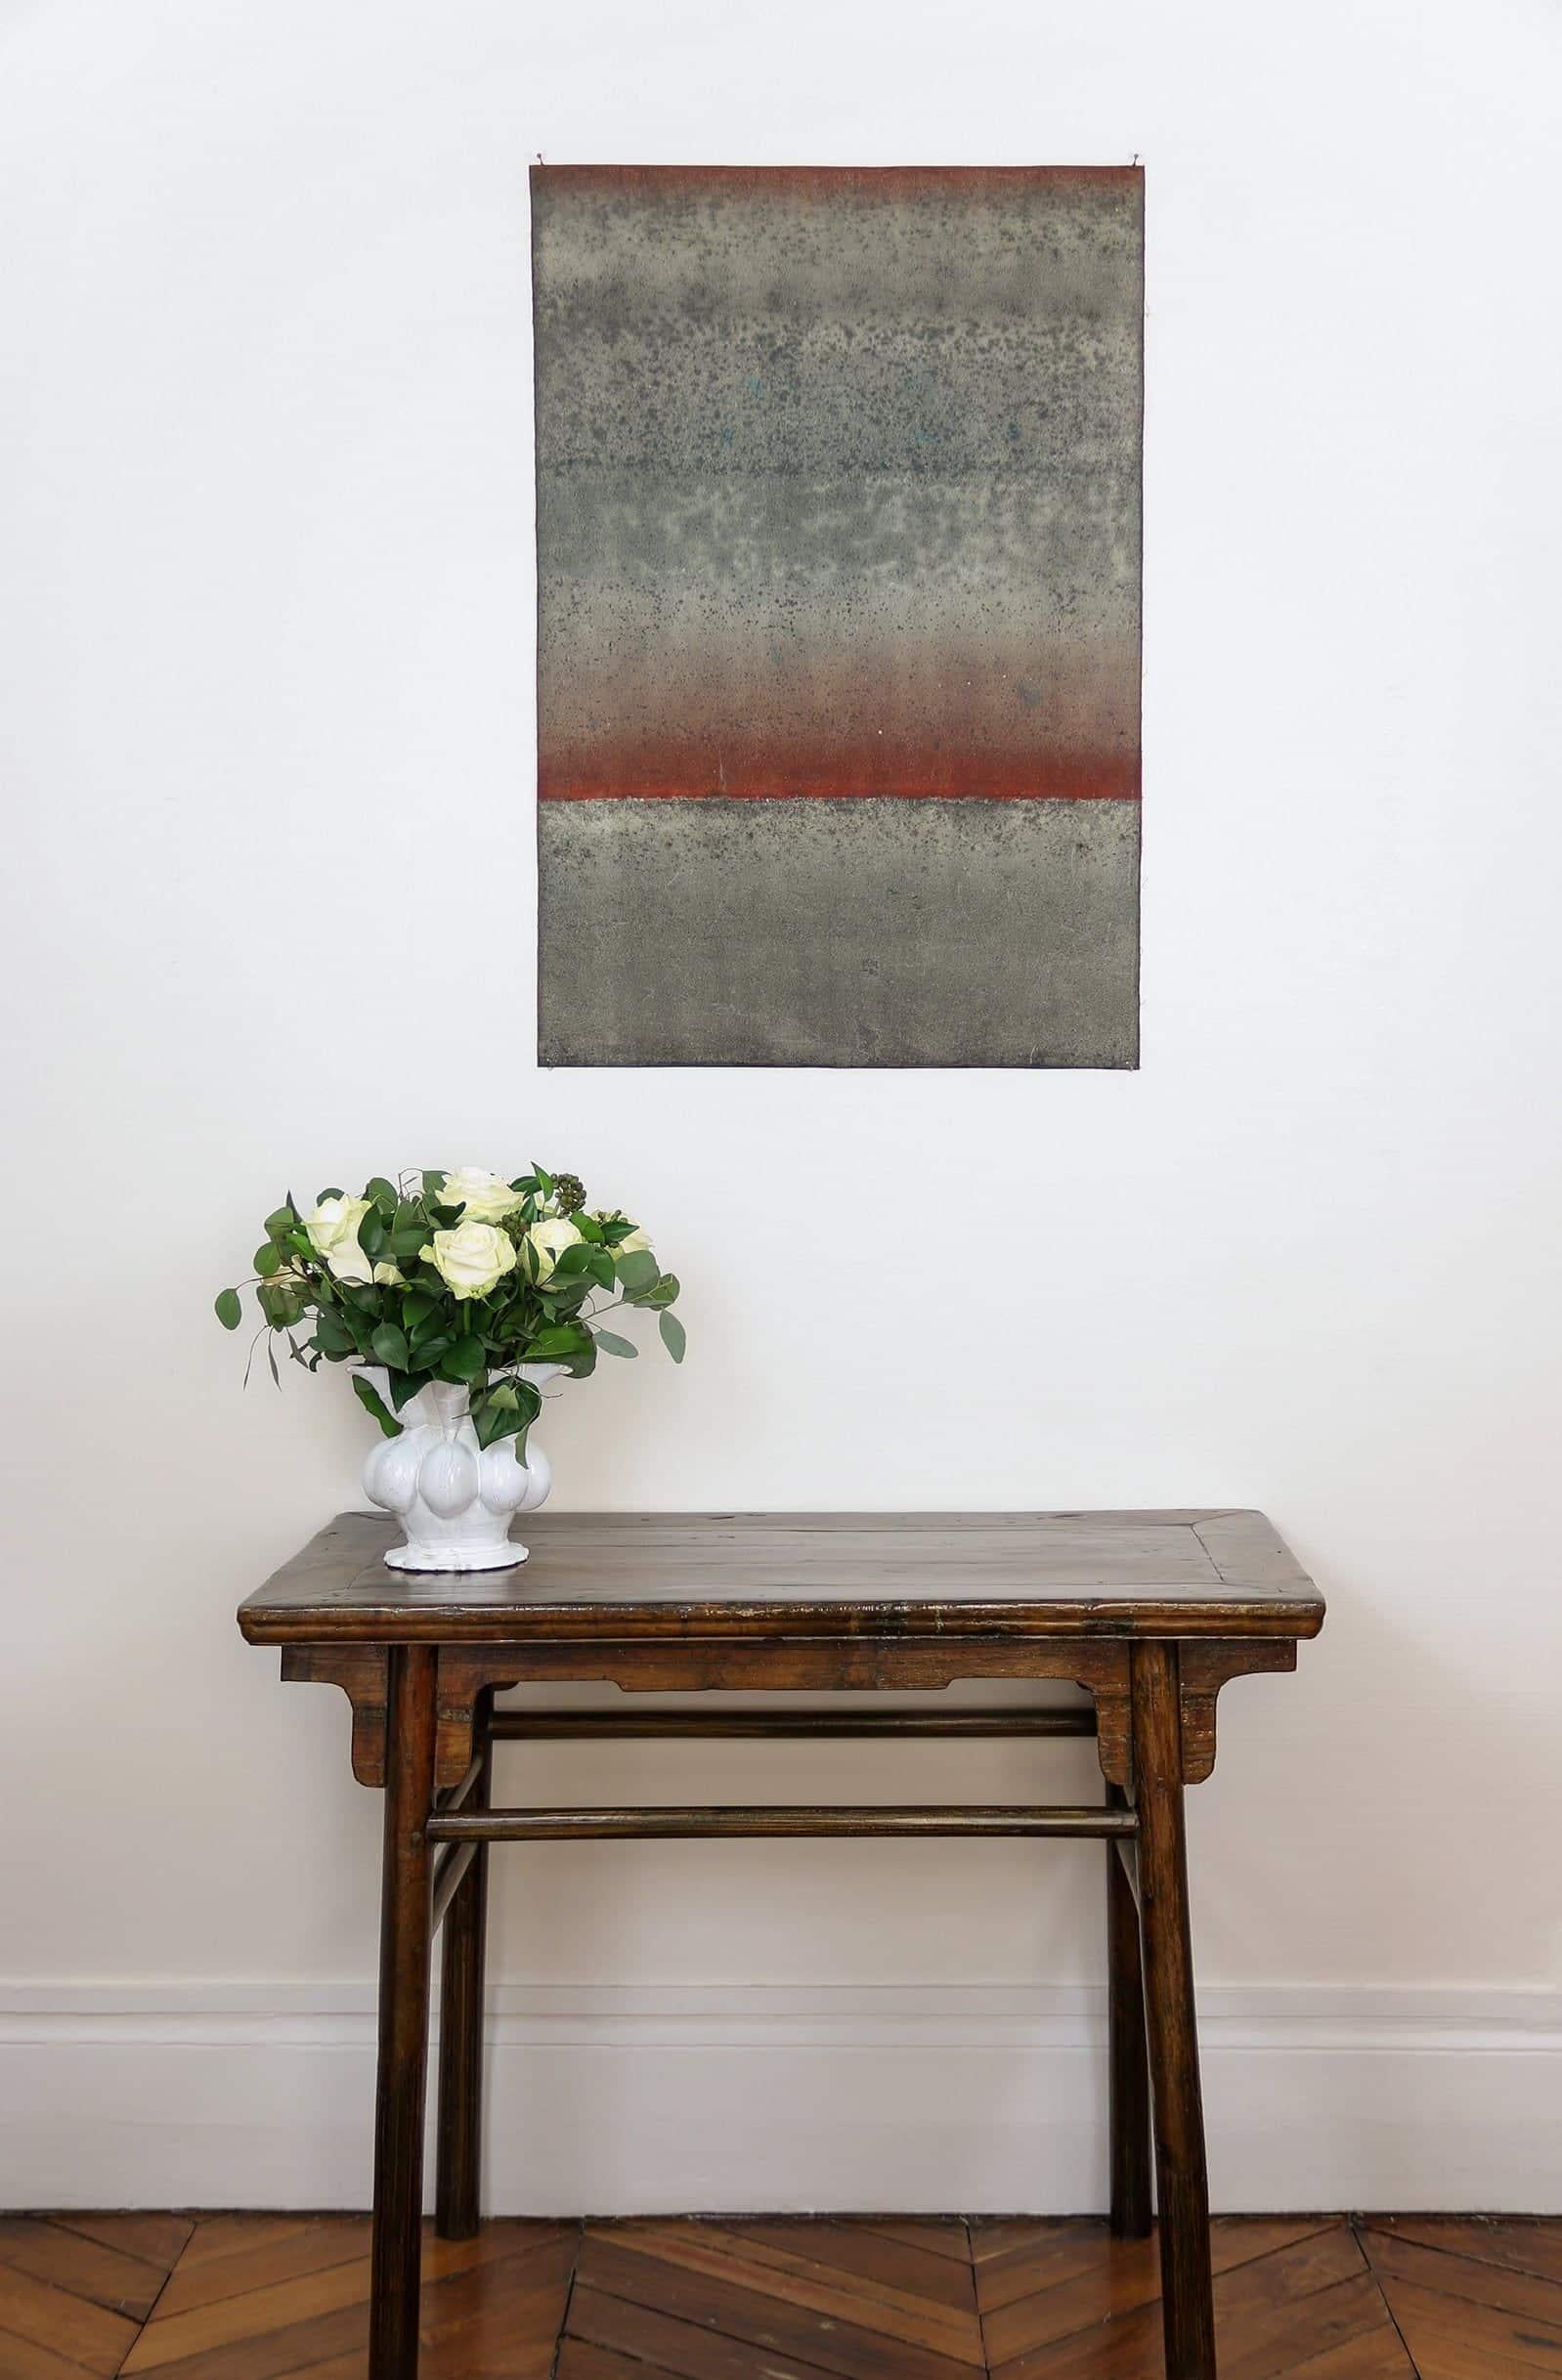 Sans titre VI de Ferle - Peinture abstraite, lignes, tons rouges et gris, spirituel - Painting de Elvire Ferle